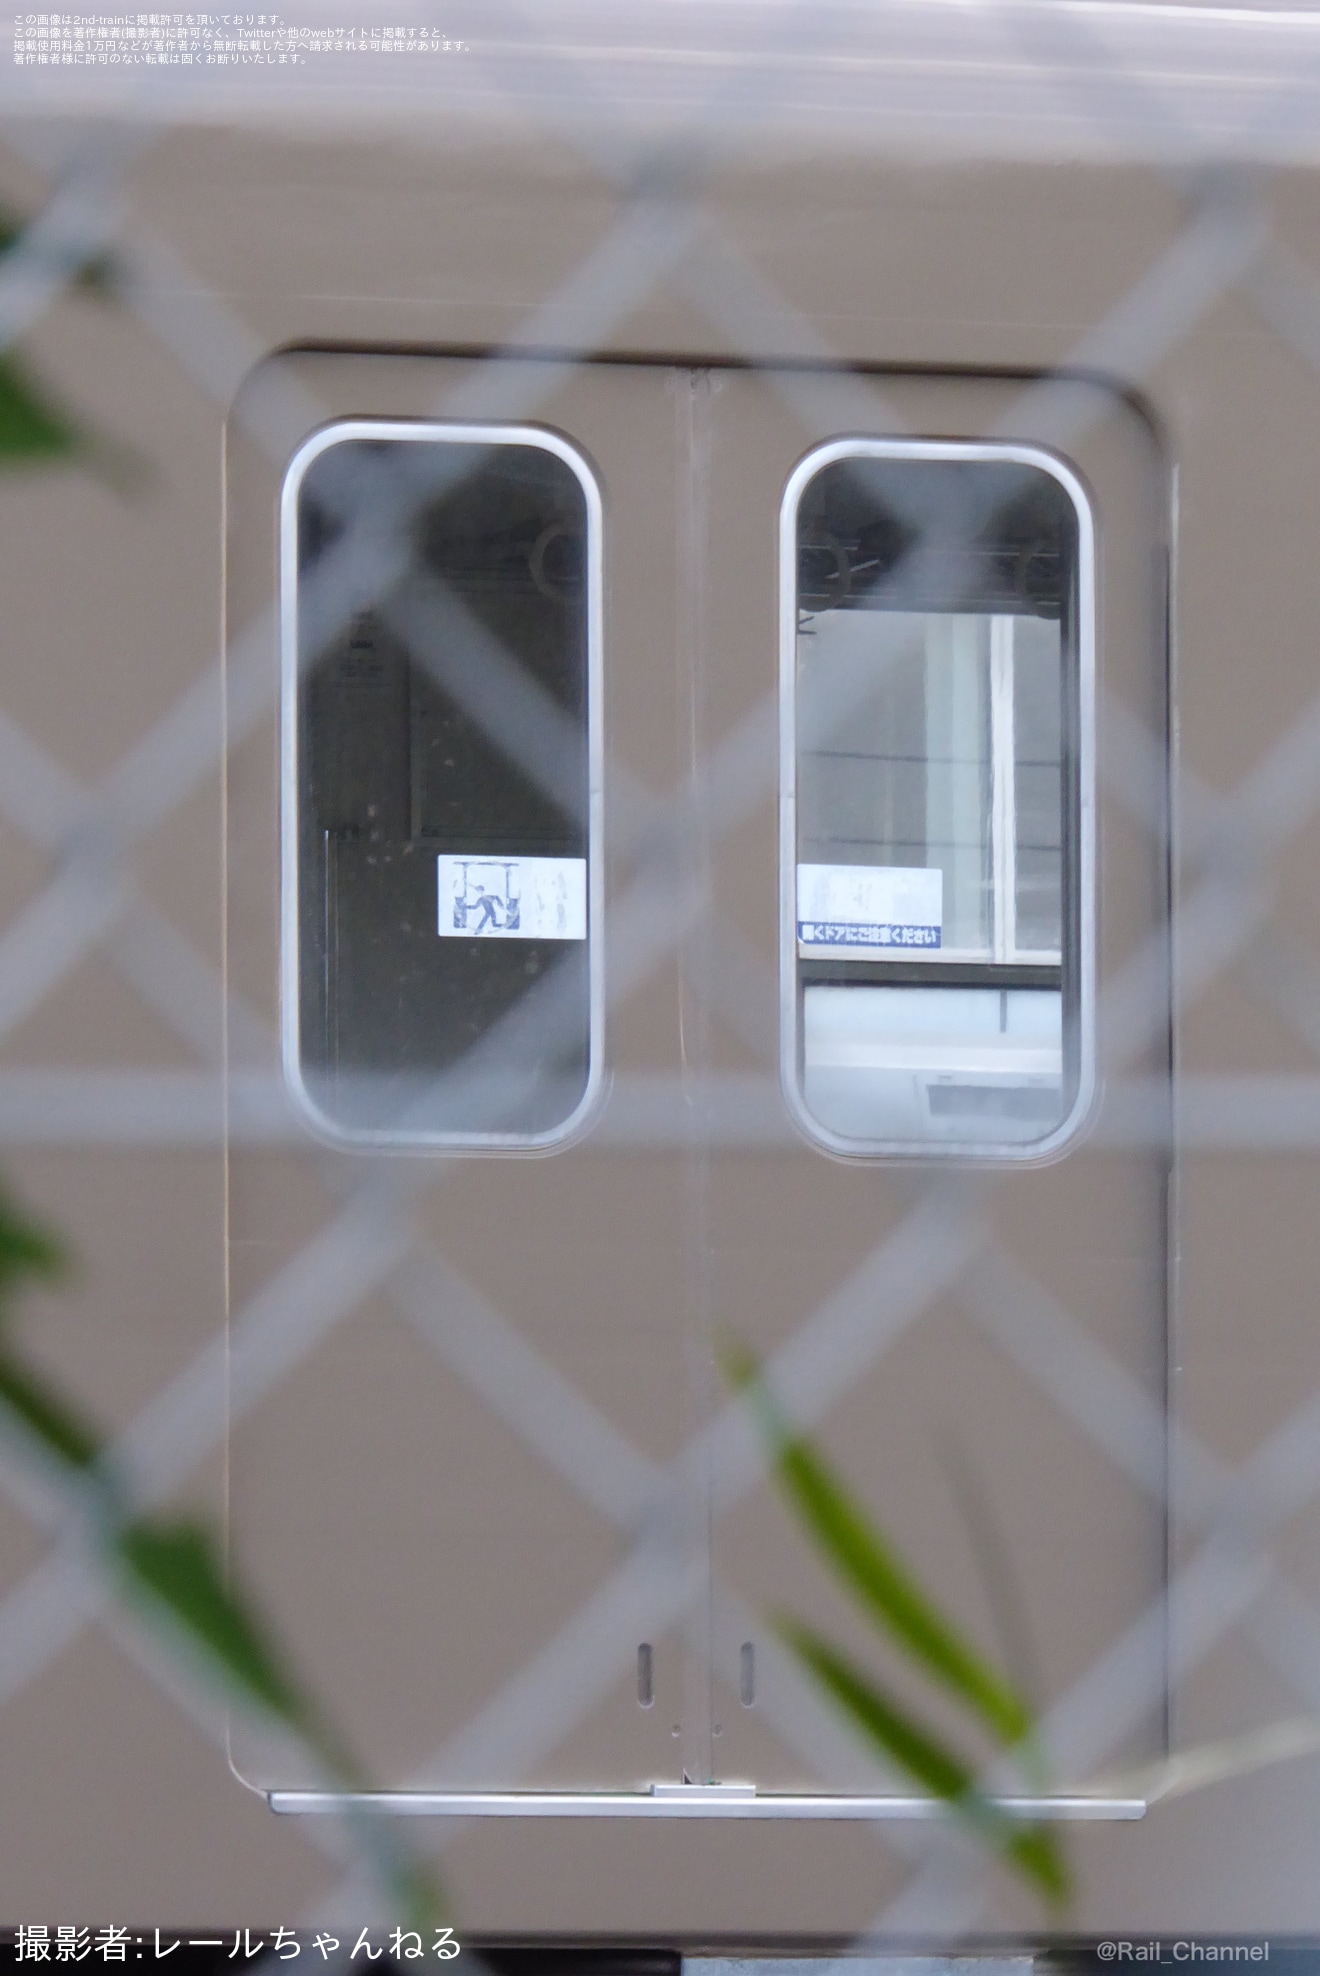 【東武】8000系8111Fがロイヤルベージュ色1色になっている姿が目撃の拡大写真